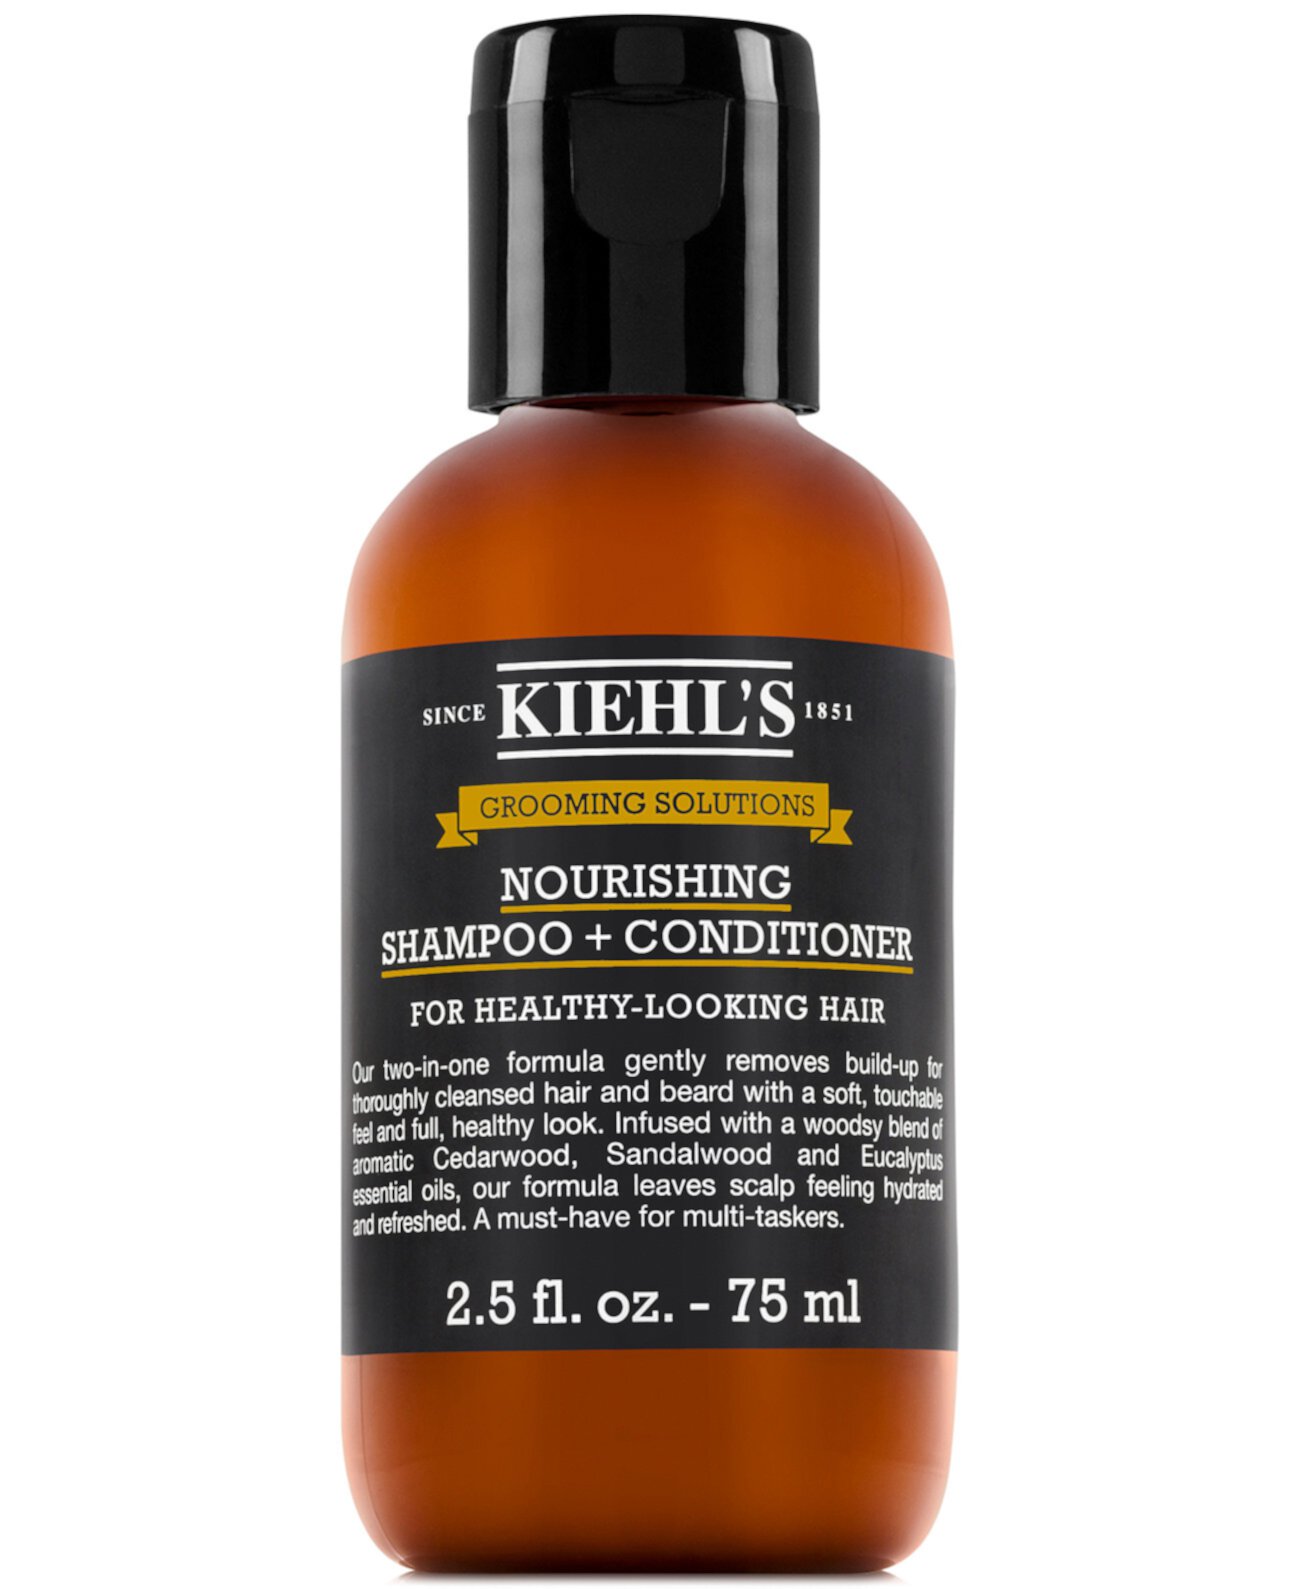 Grooming Solutions Питательный шампунь + кондиционер, 2,5 унции. Kiehl's Since 1851